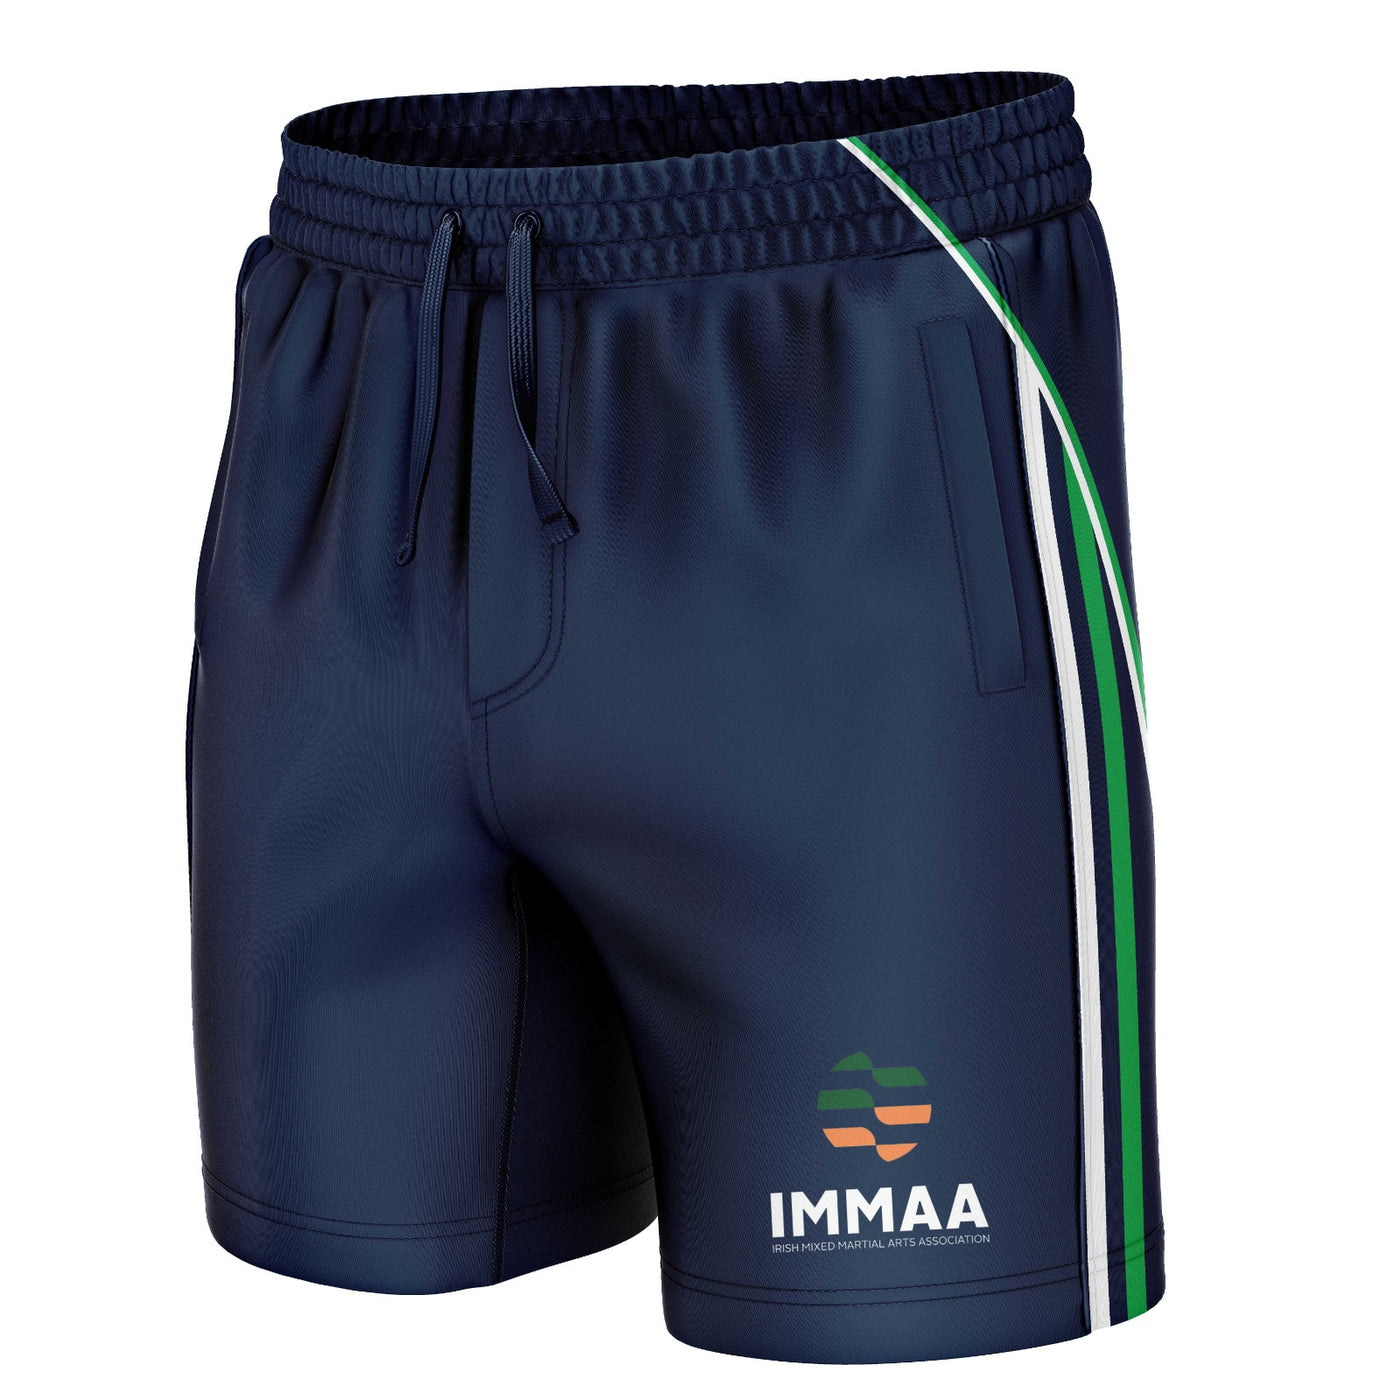 IMMAA Ireland - Leisure Shorts